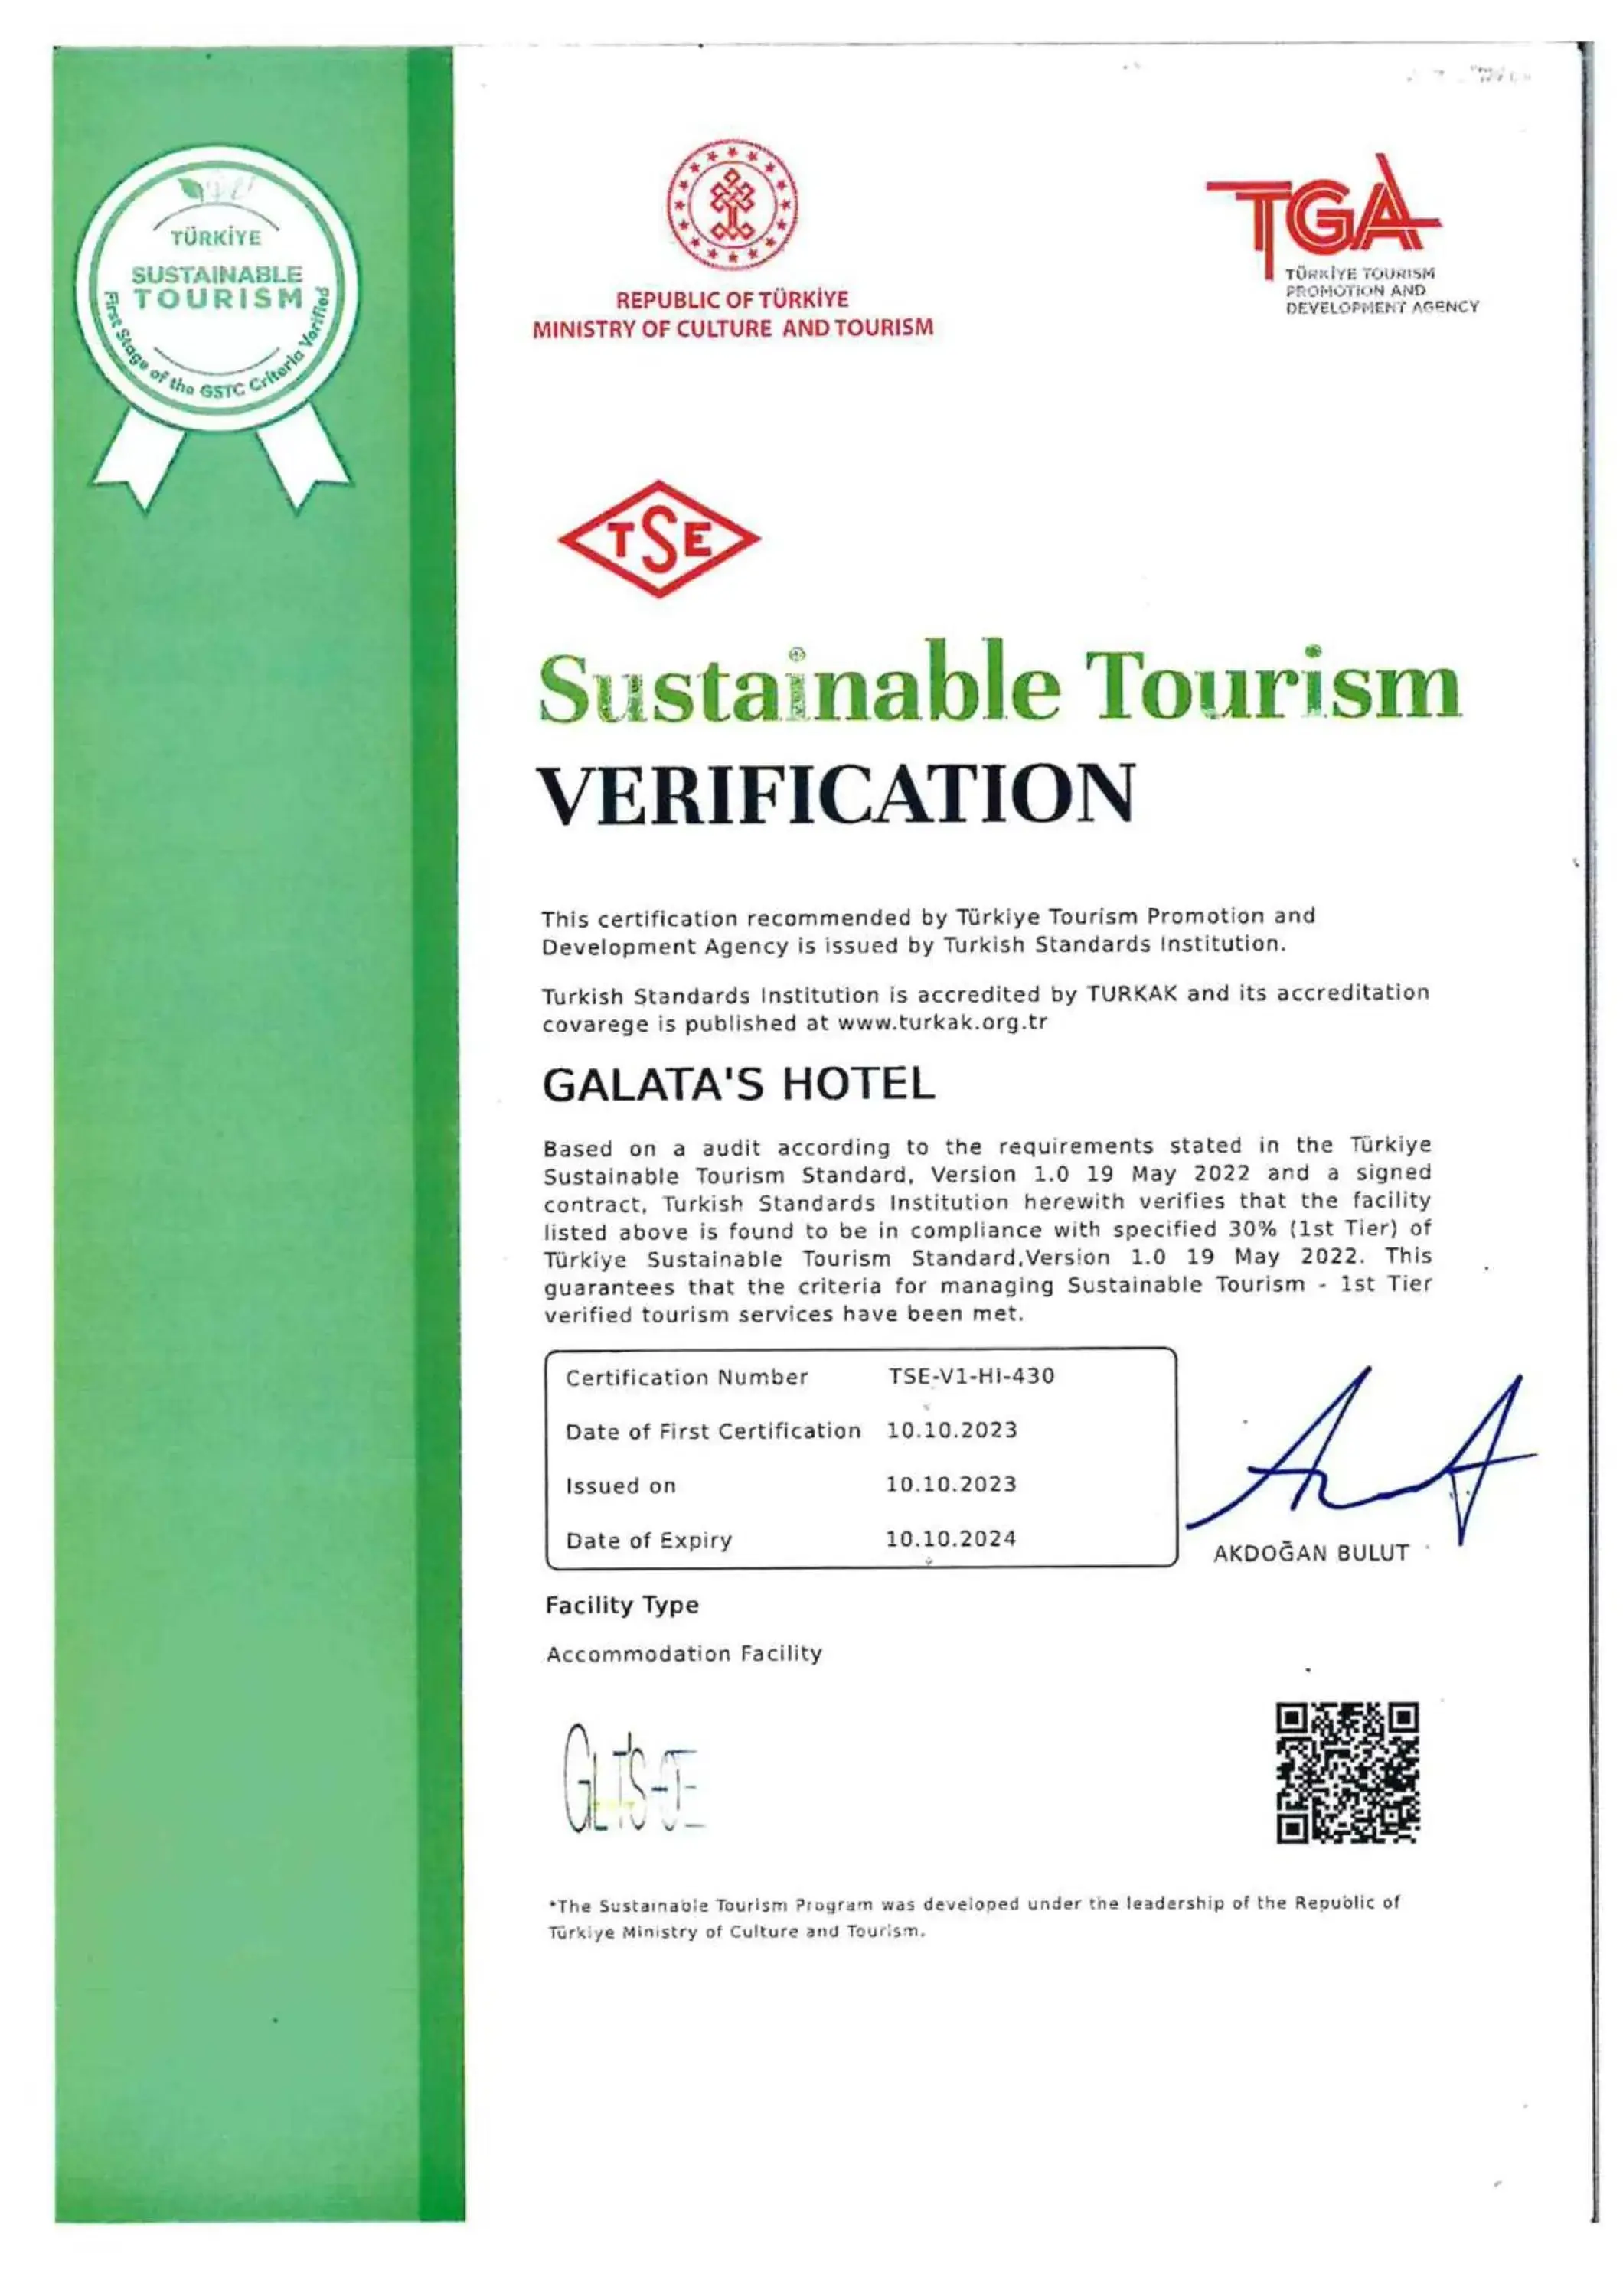 Certificate/Award in Galata's Hotel